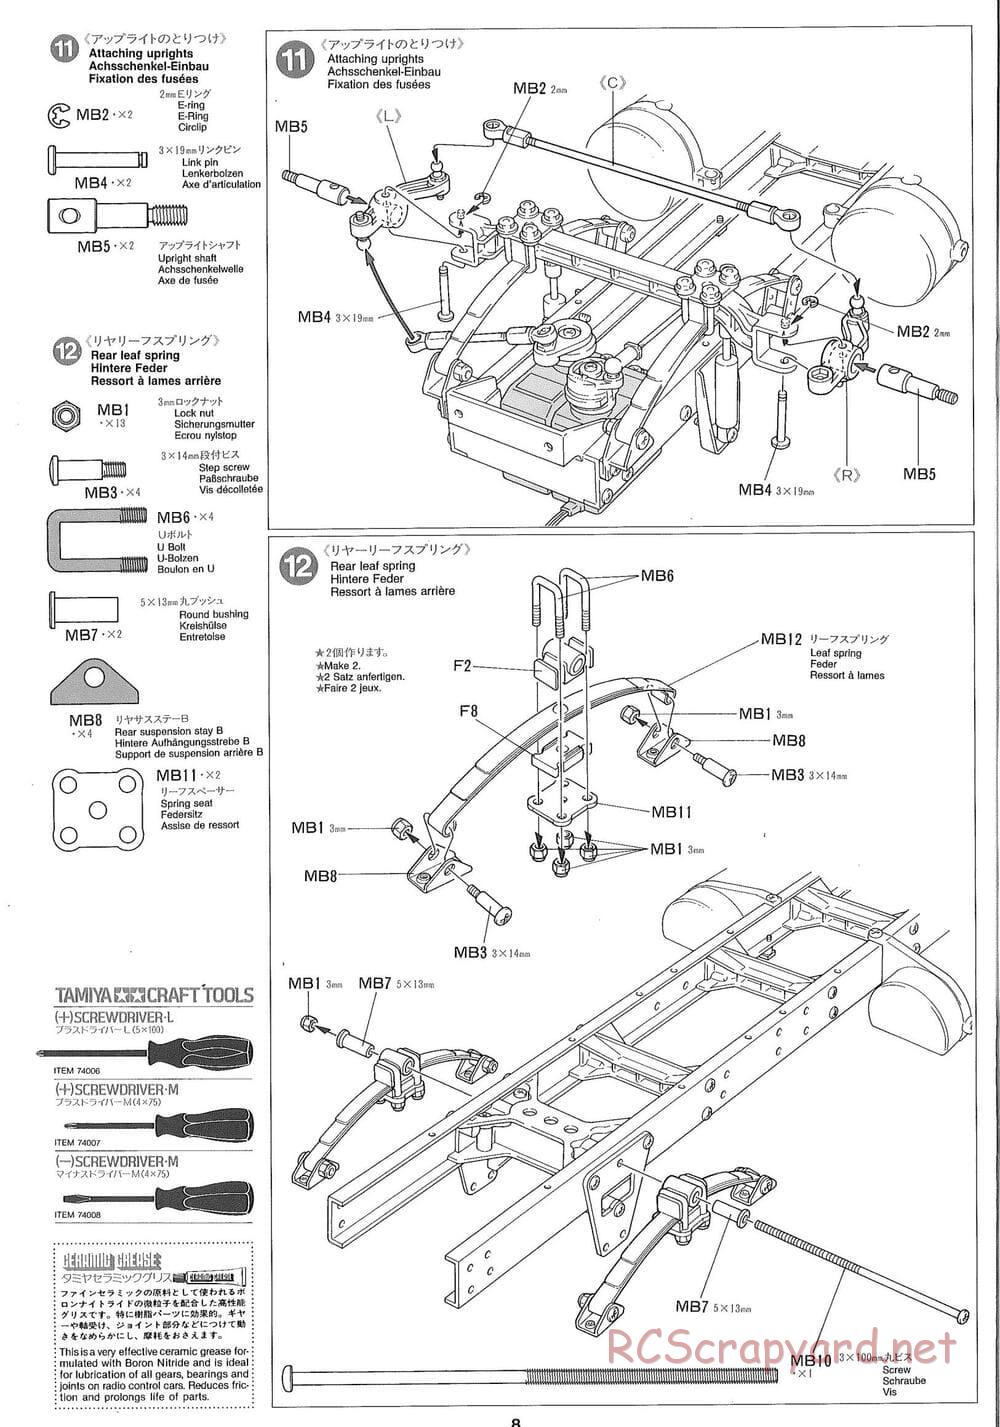 Tamiya - Ford Aeromax - Manual - Page 8